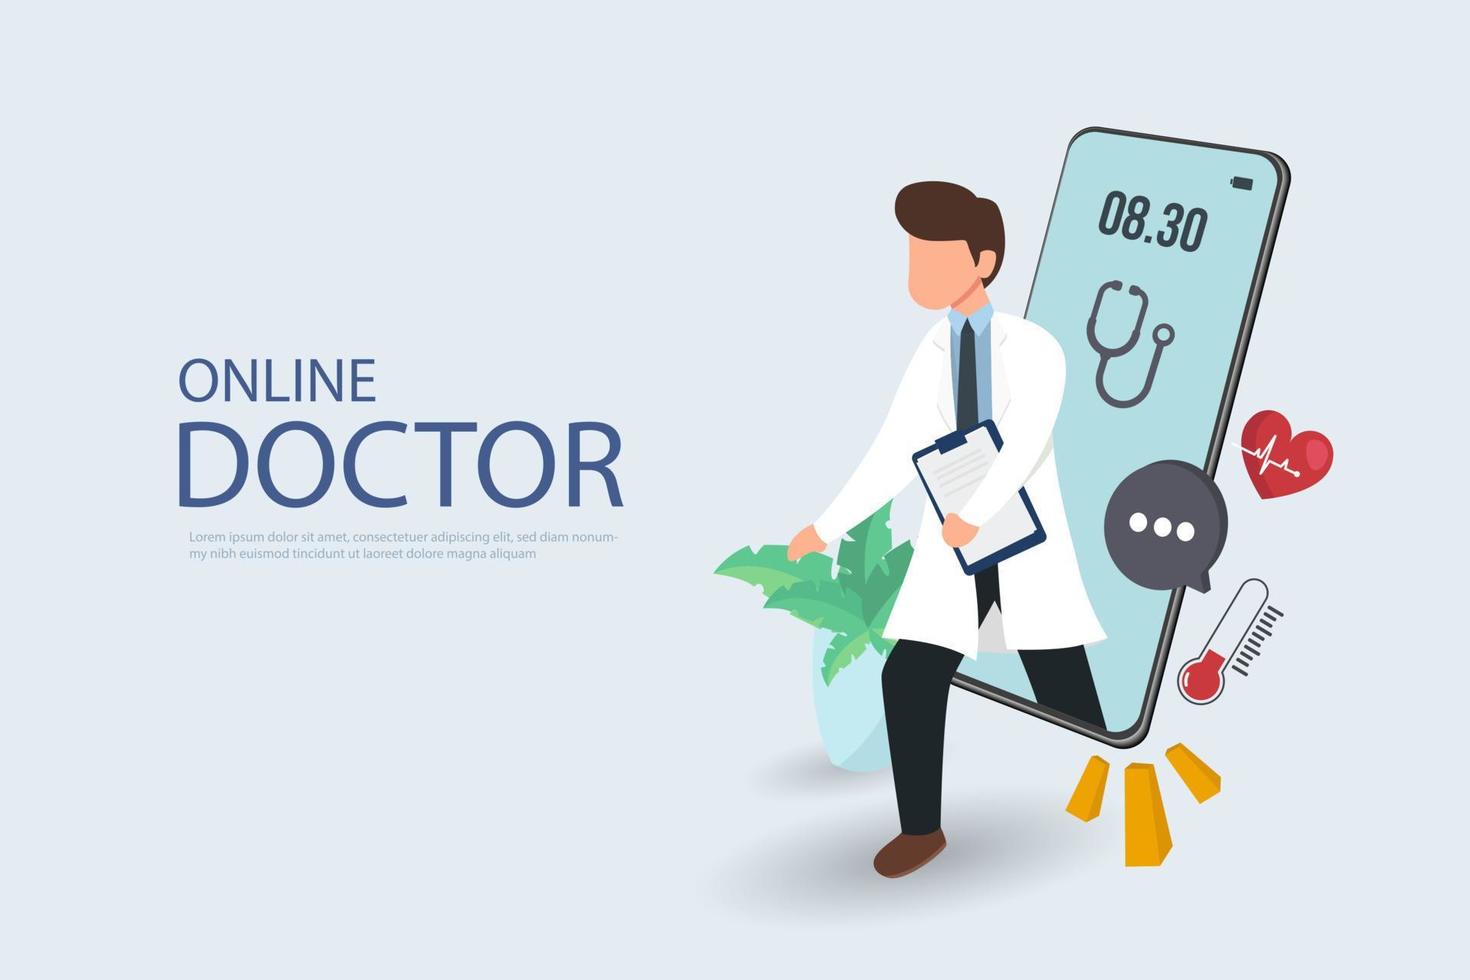 paziente che incontra un medico professionista online su uno smartphone e si stringe la mano, concetto di consulenza medica online vettore